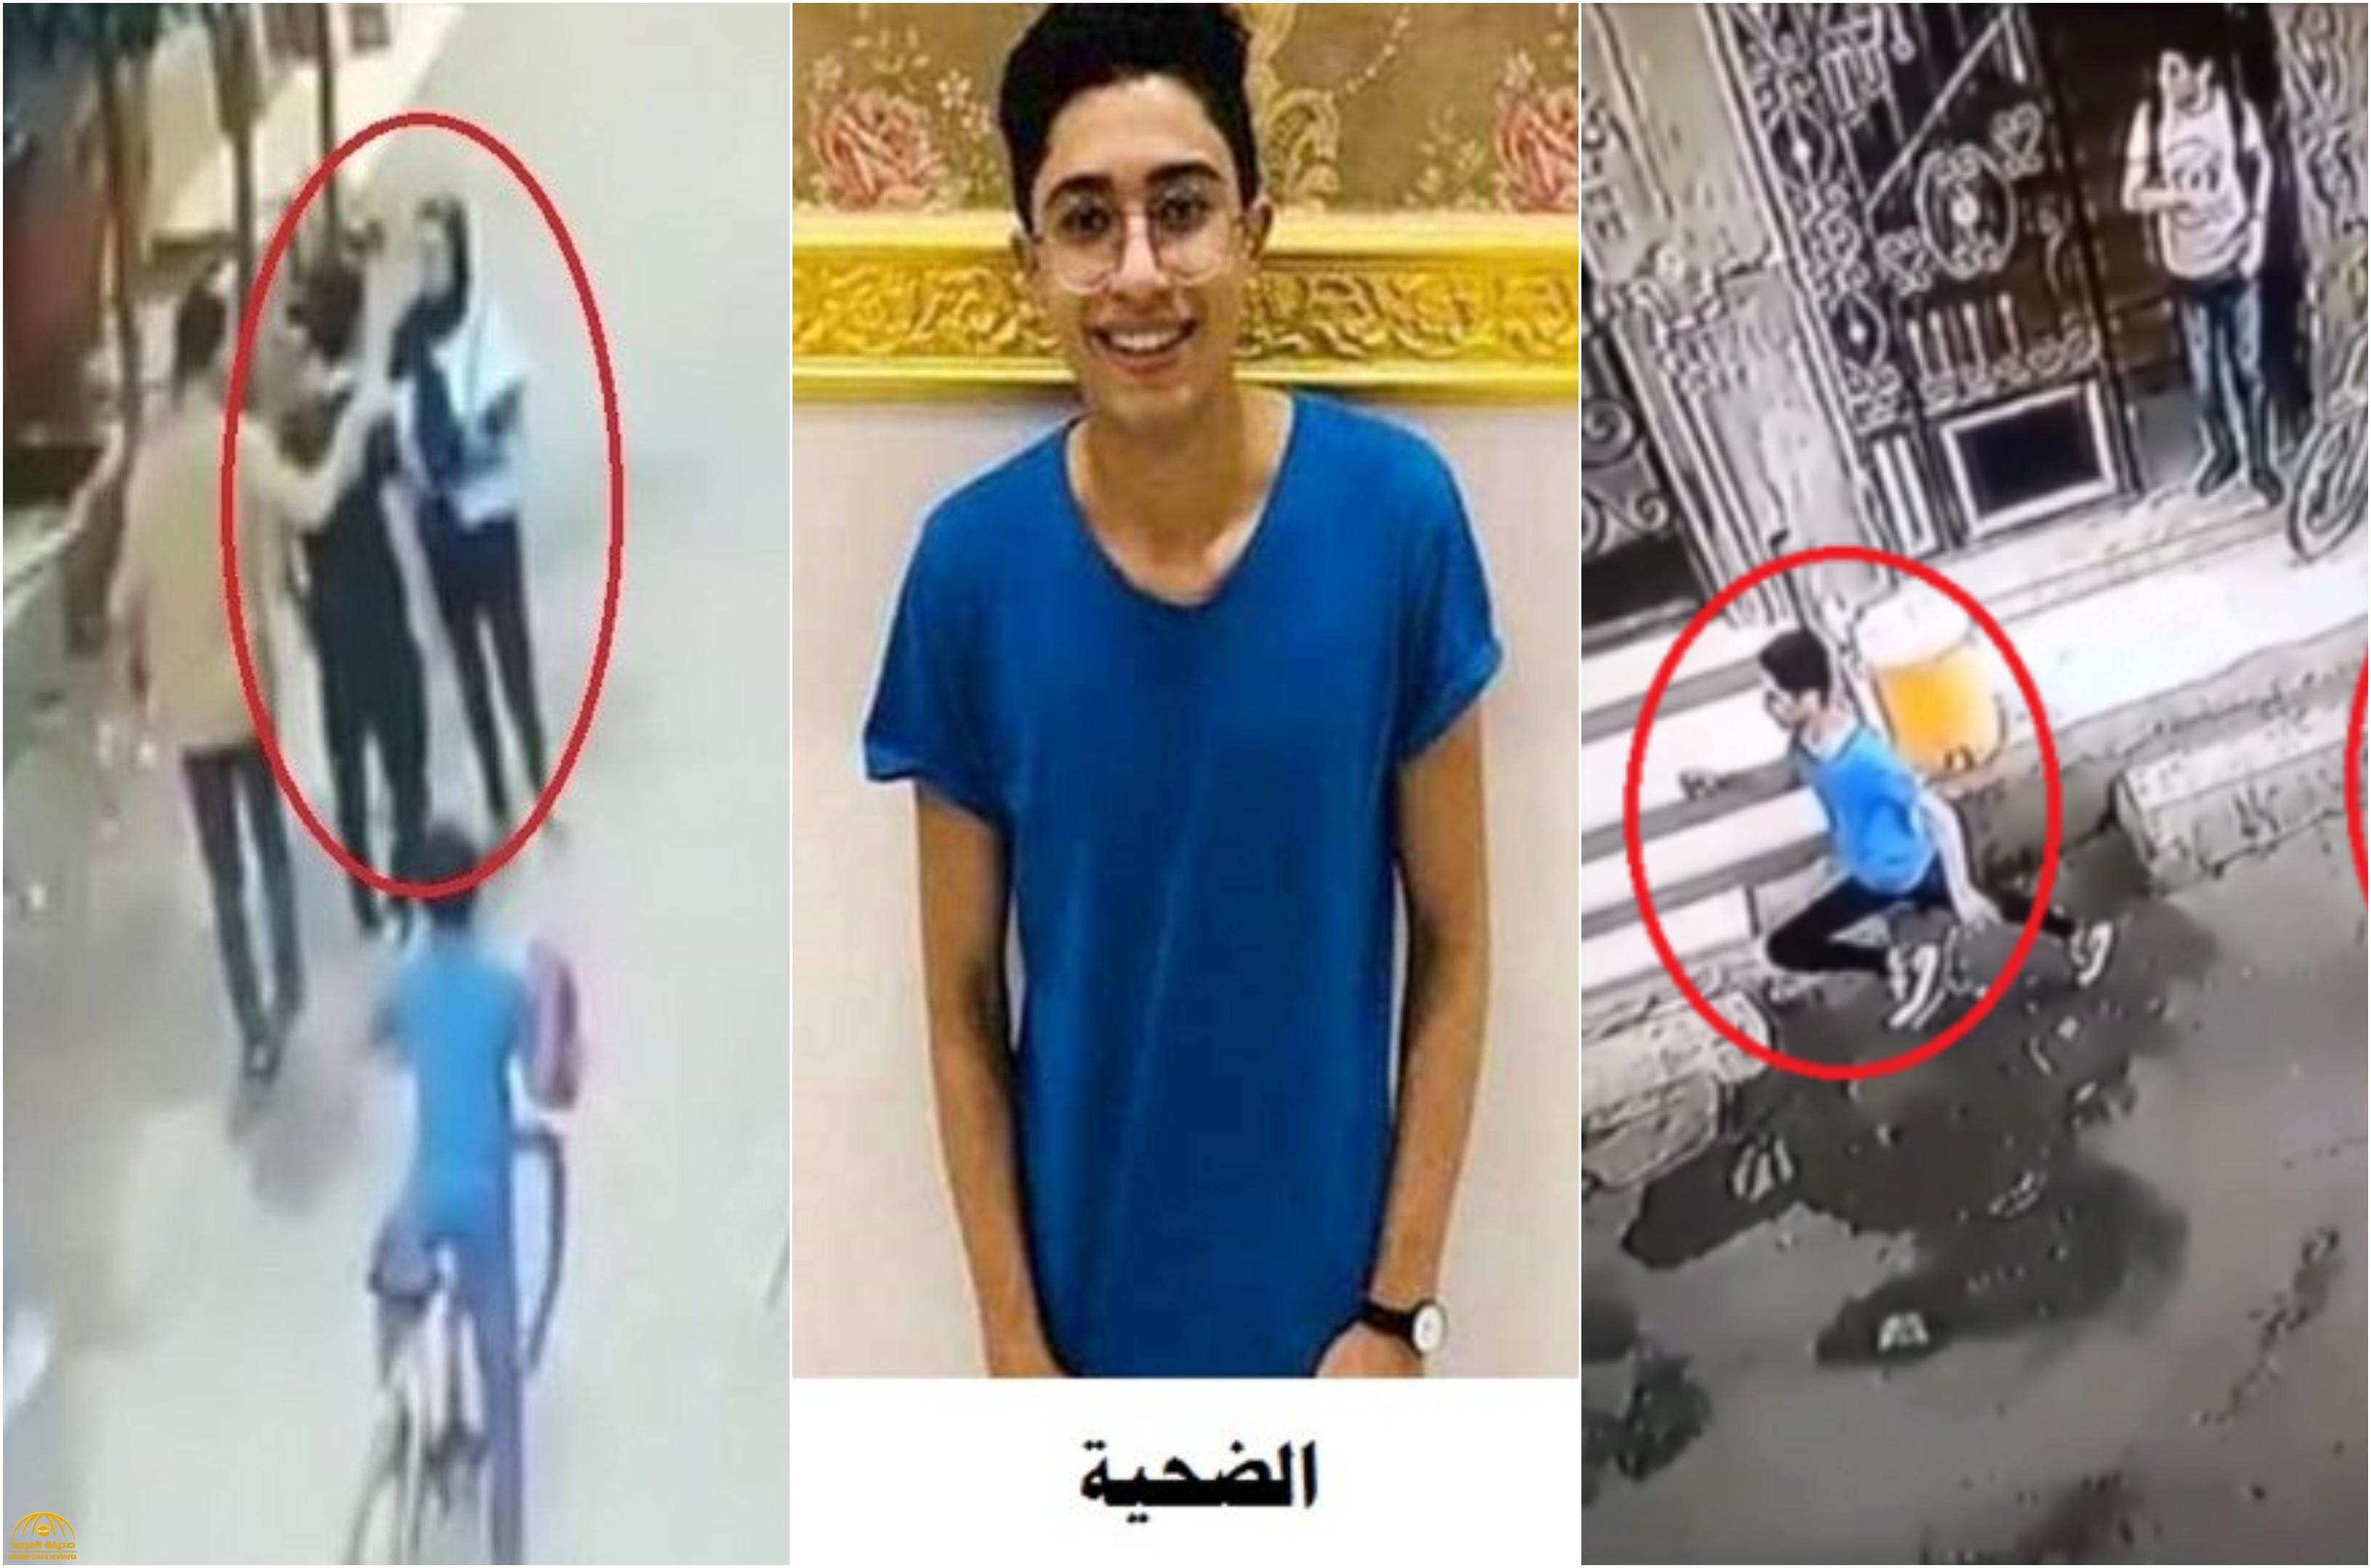 الكشف عن تفاصيل جديدة في واقعة مقتل طالب مصري على يد متحرش - فيديو وصور